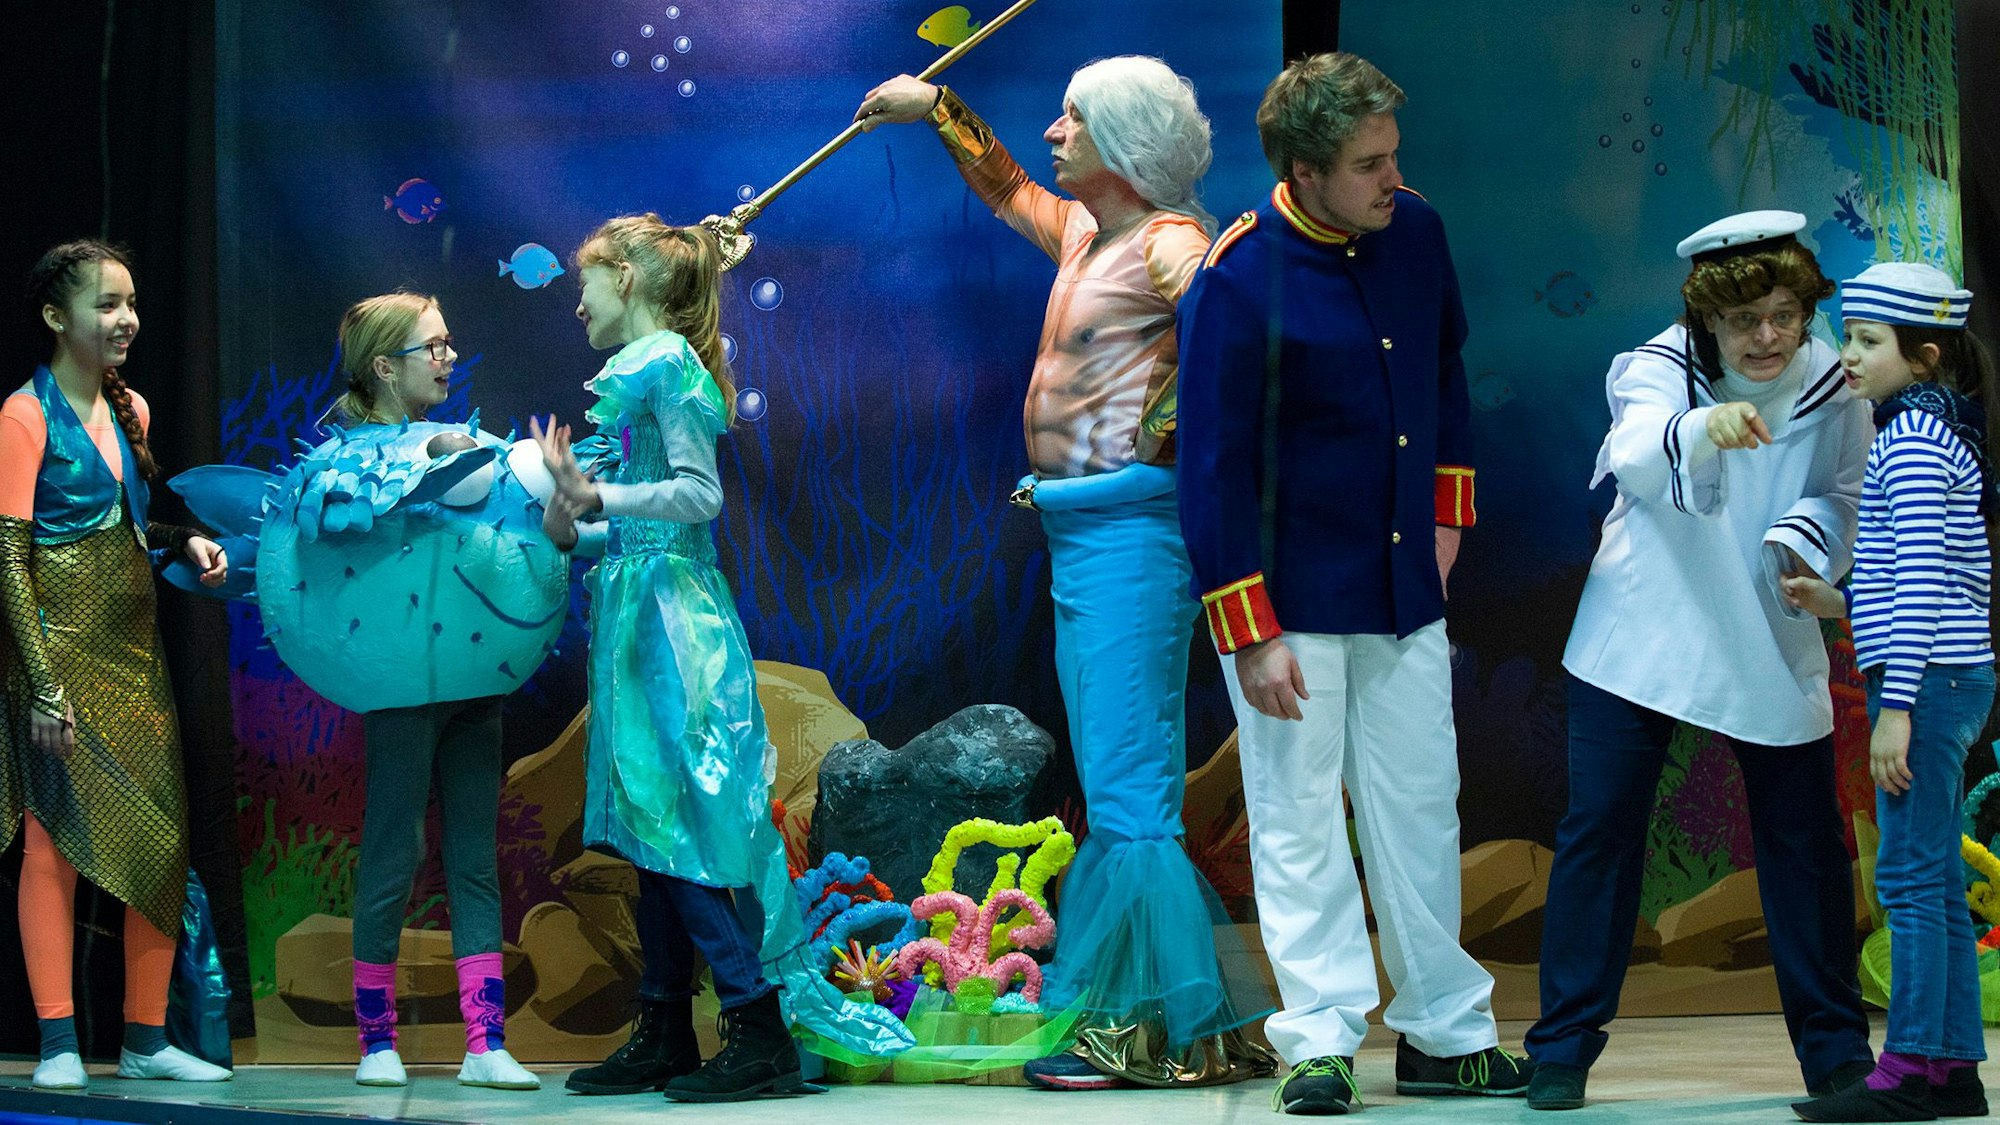 Kinder in Kostümen führen das Stück "Arielle, die kleine Meerjungfrau" auf.